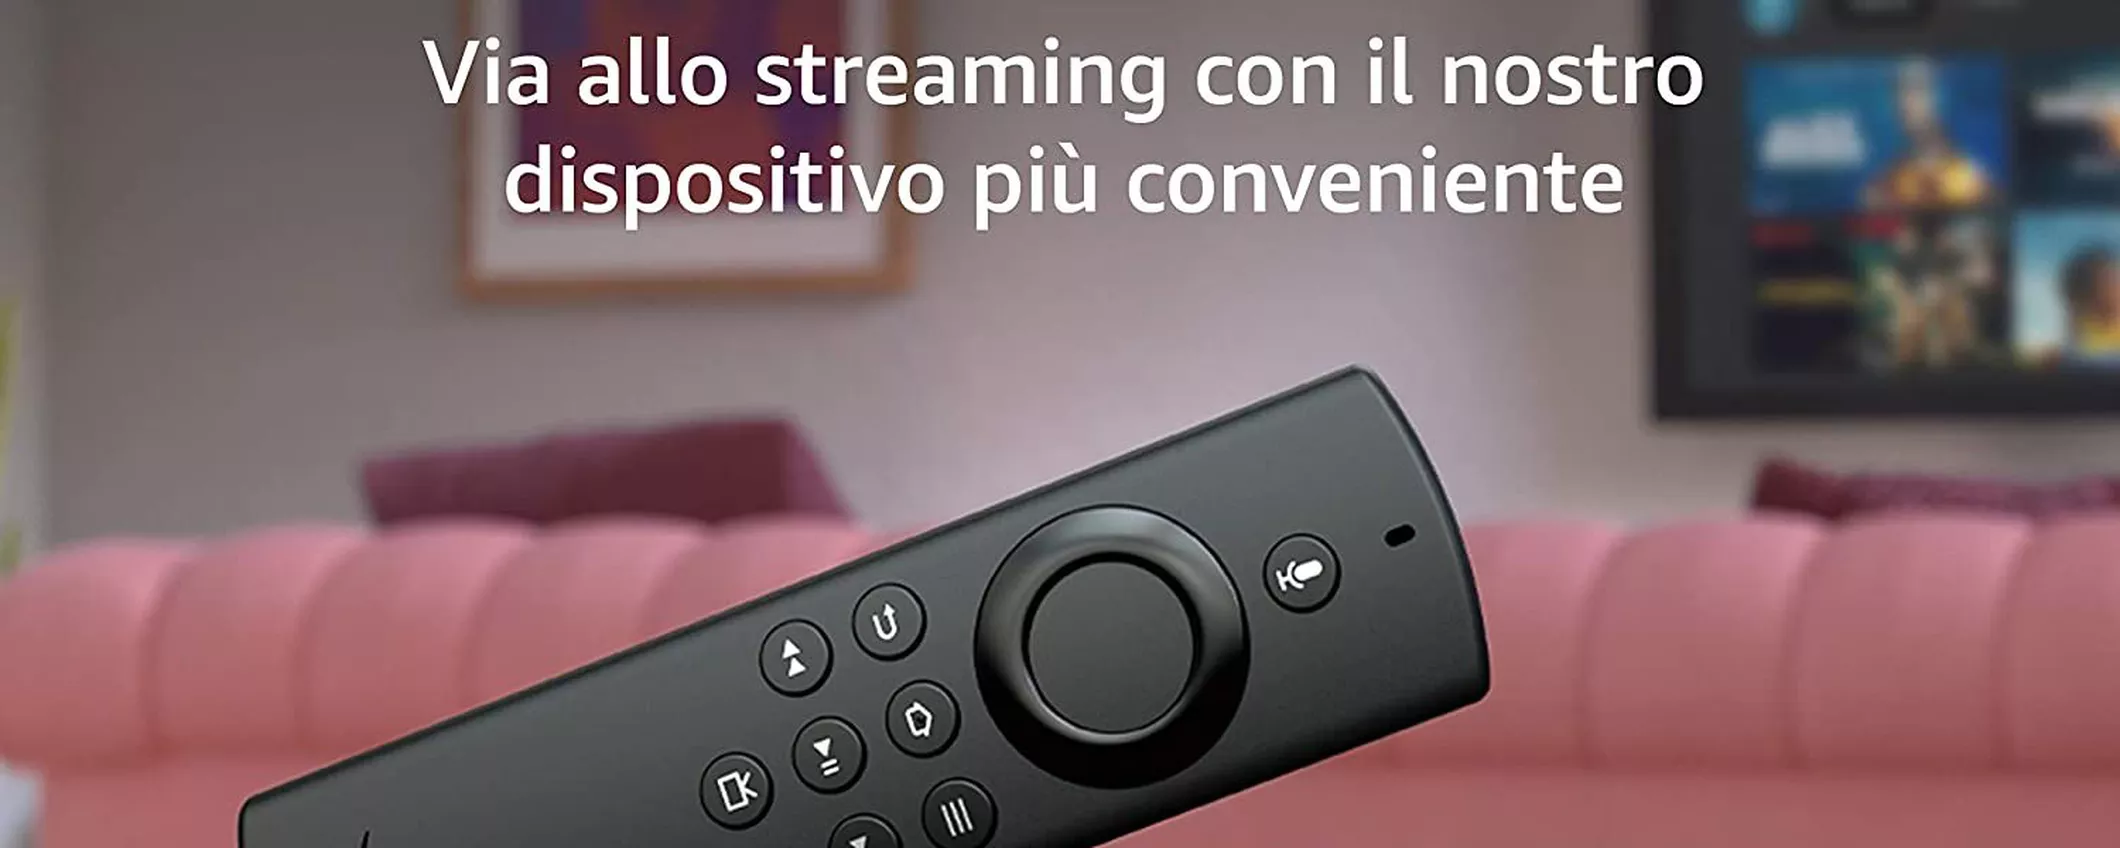 Fire TV Stick Lite con telecomando vocale Alexa di NUOVO IN SCONTO: offerta inaspettata